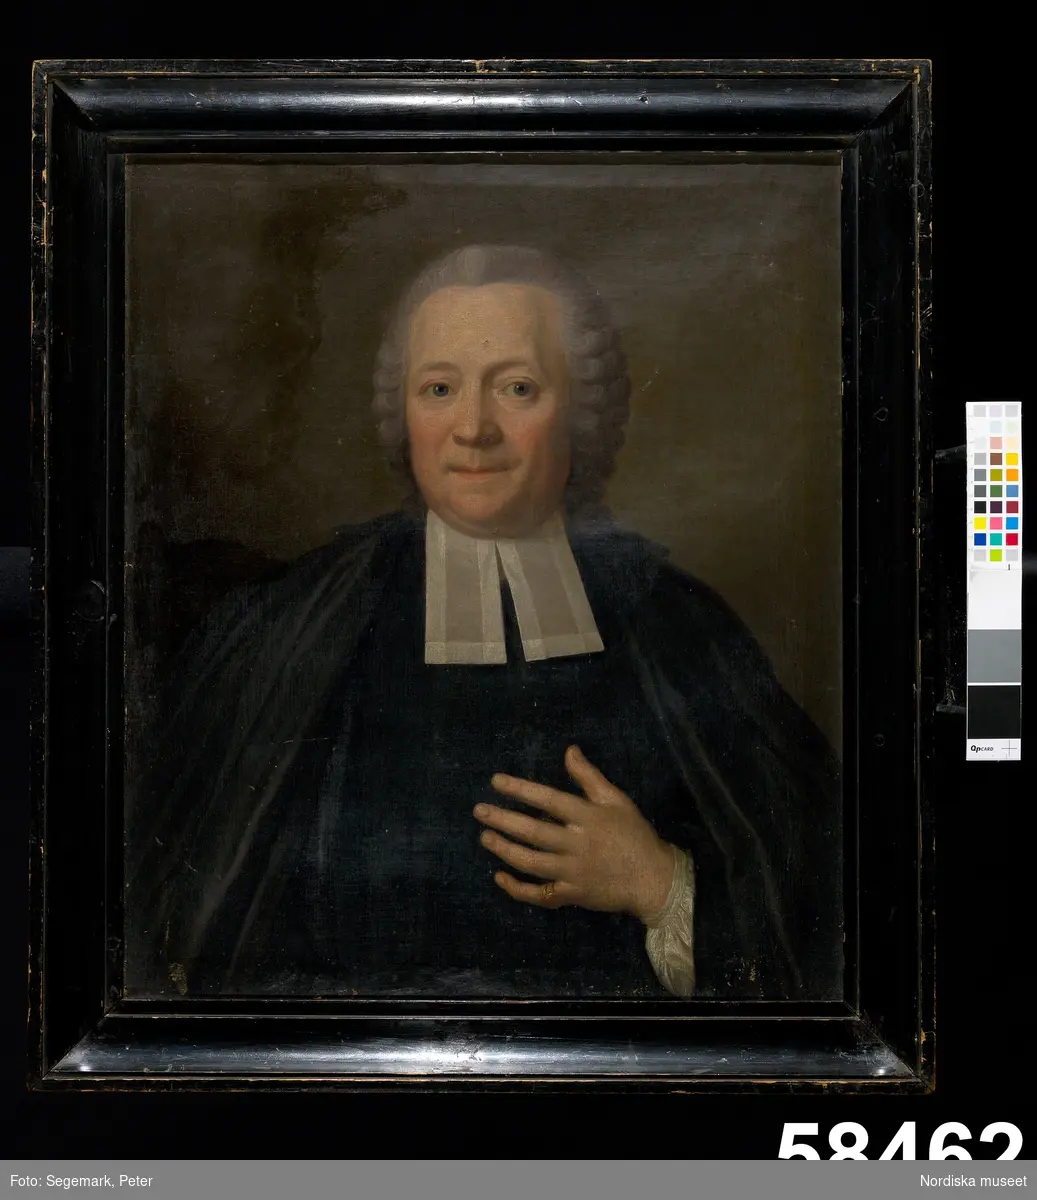 Mansporträtt: prästporträtt, midjebild, en face.